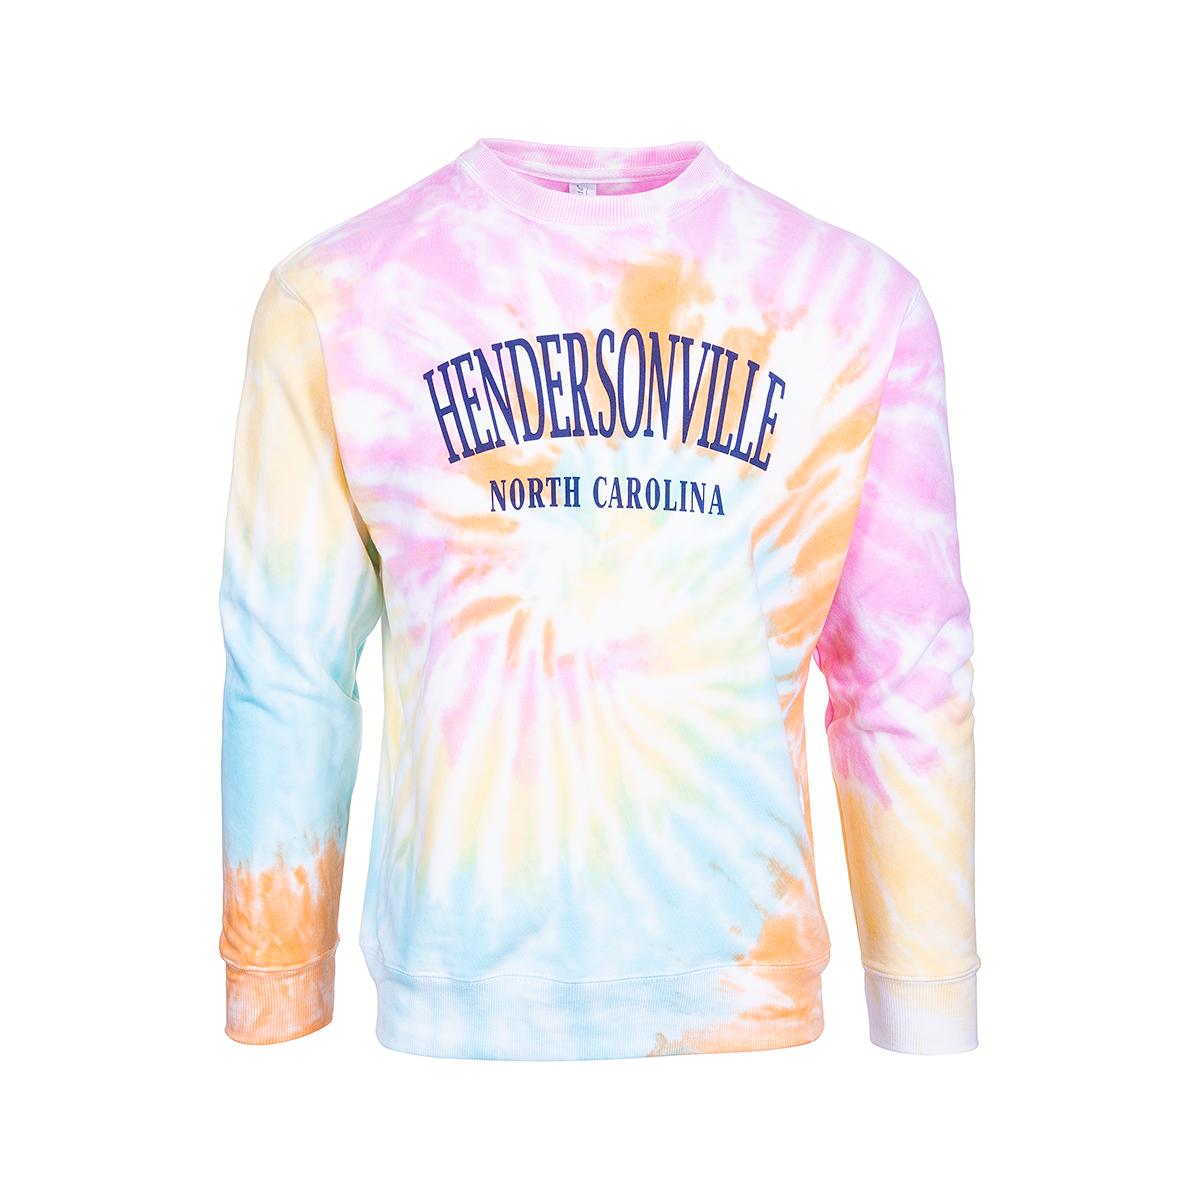  Hendersonville Tie Dye Crew Neck Knit Sweatshirt